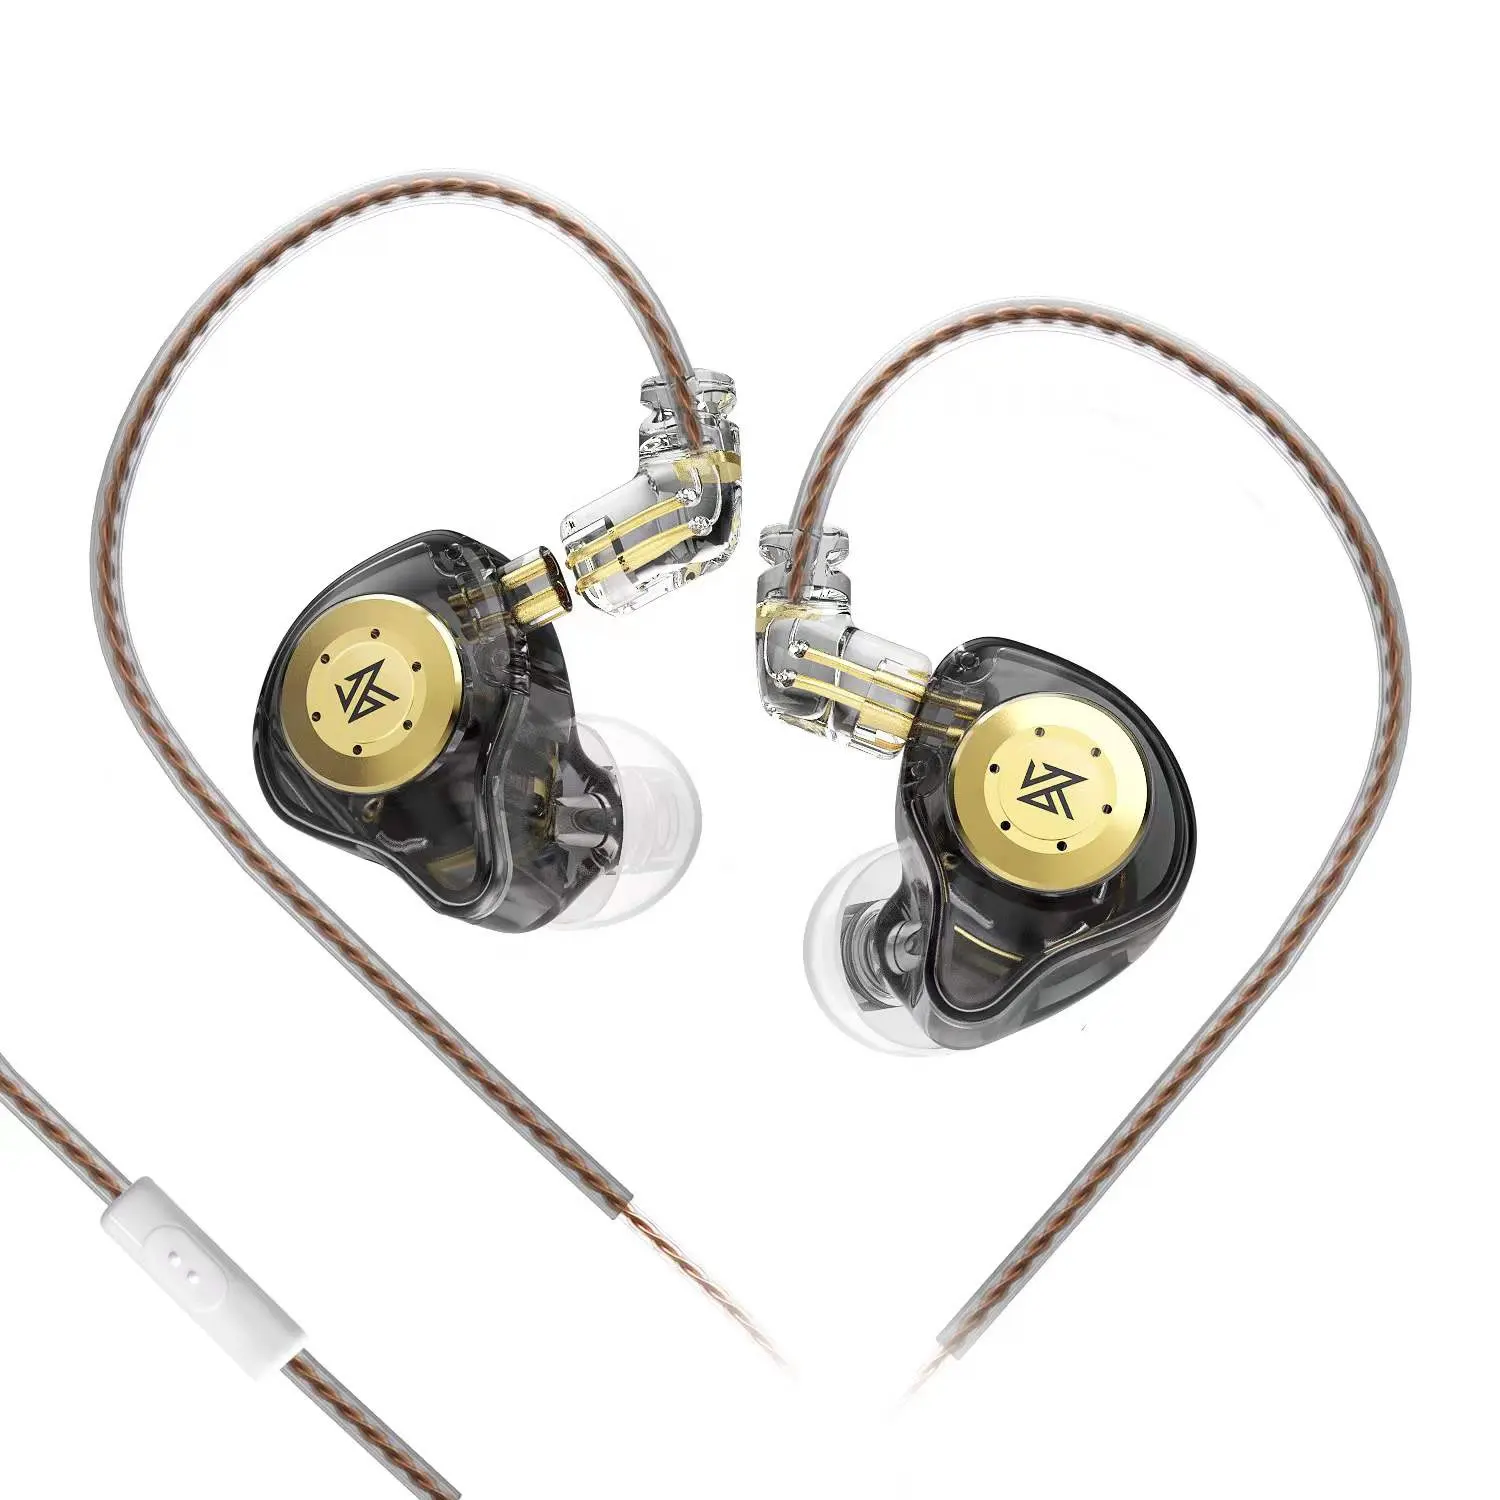 KZ EDX Pro Earphones HIFI Bass Earbuds In Ear Monitor Headphones Sport Noise Cancelling Headset New Arrival!